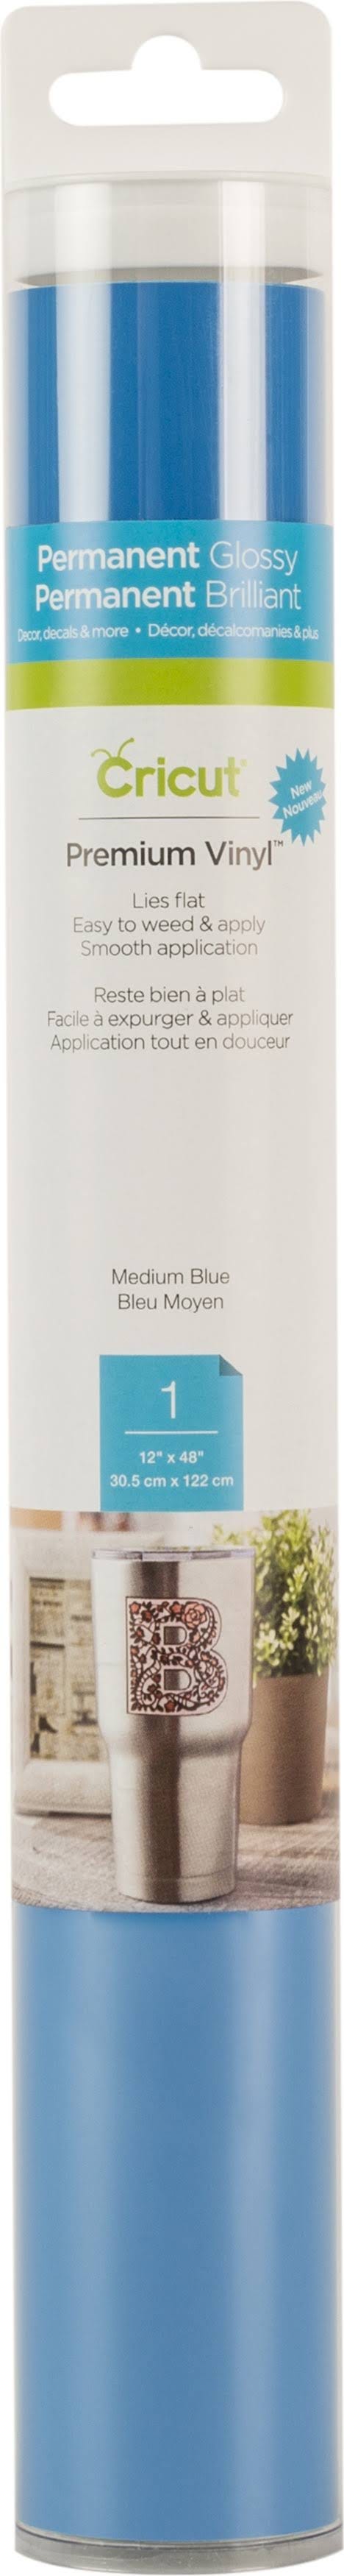 Cricut Medium Blue Premium Permanent Vinyl Roll | Image